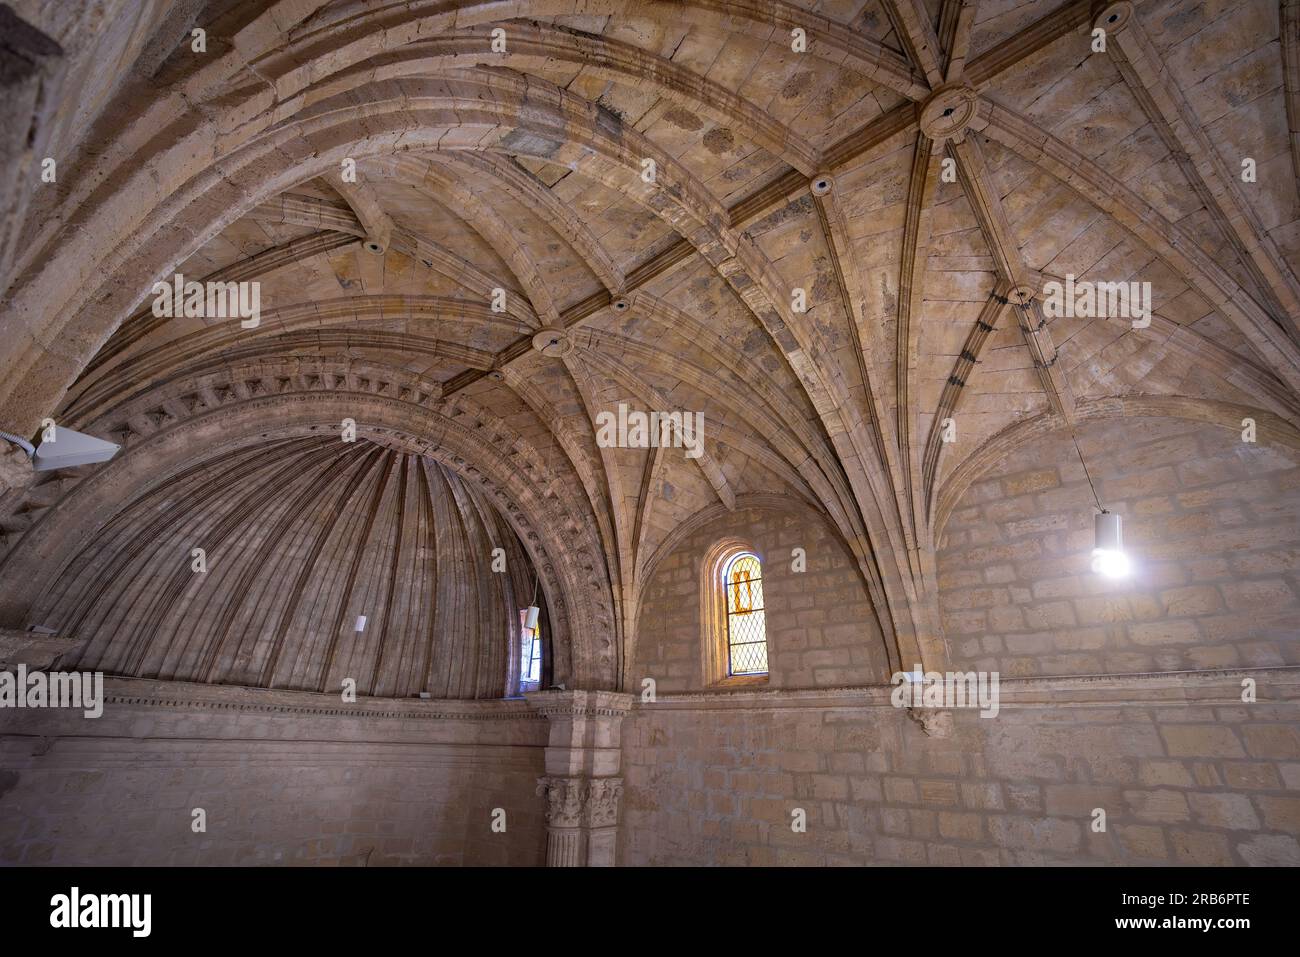 Ceiling of Iglesia de la Villa Church - Montefrio, Andalusia, Spain Stock Photo